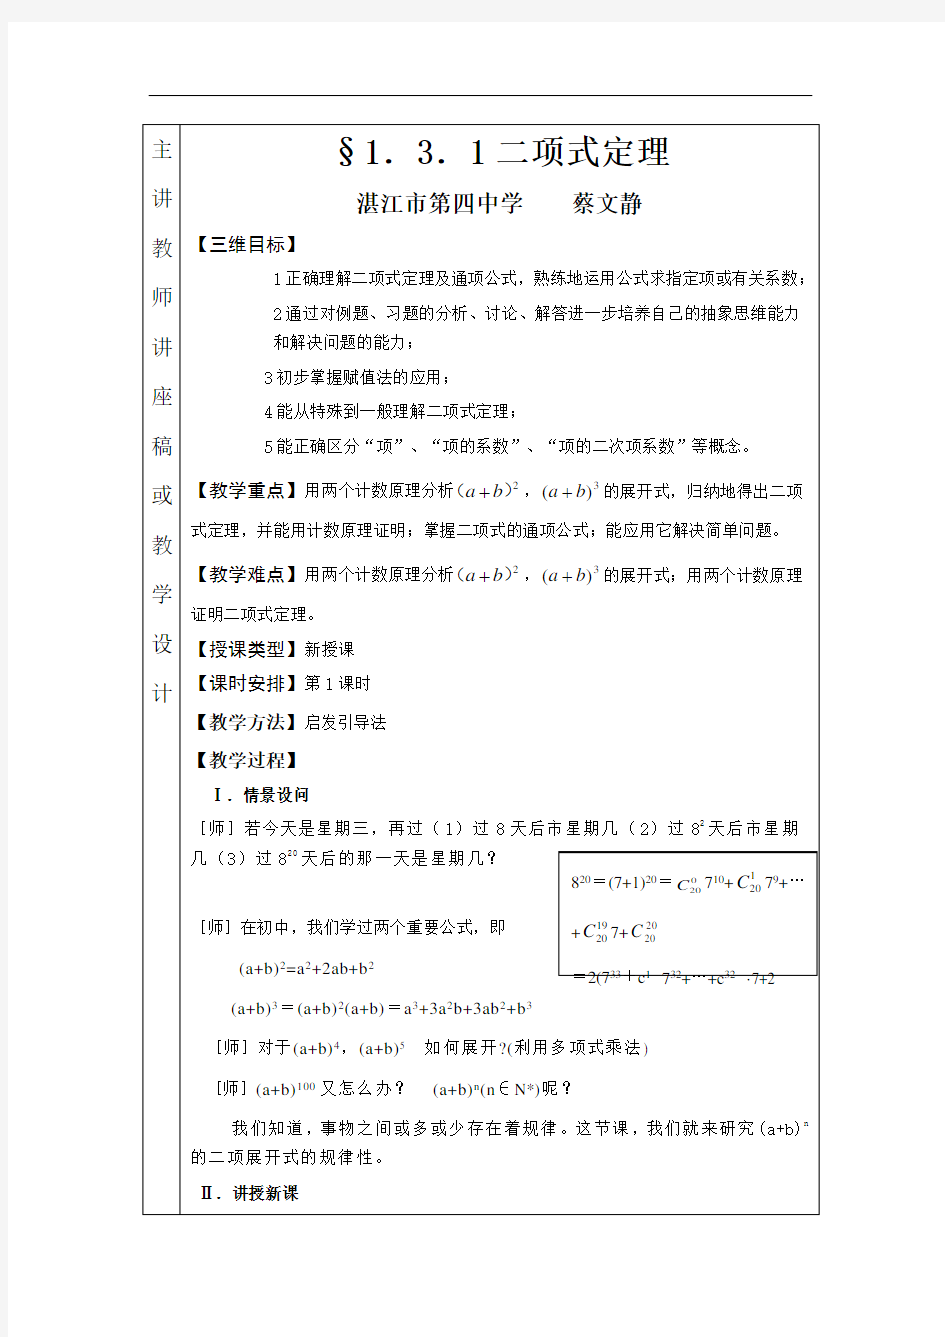 2012学年湛江第四中学数学教研组校本研修活动记录表一